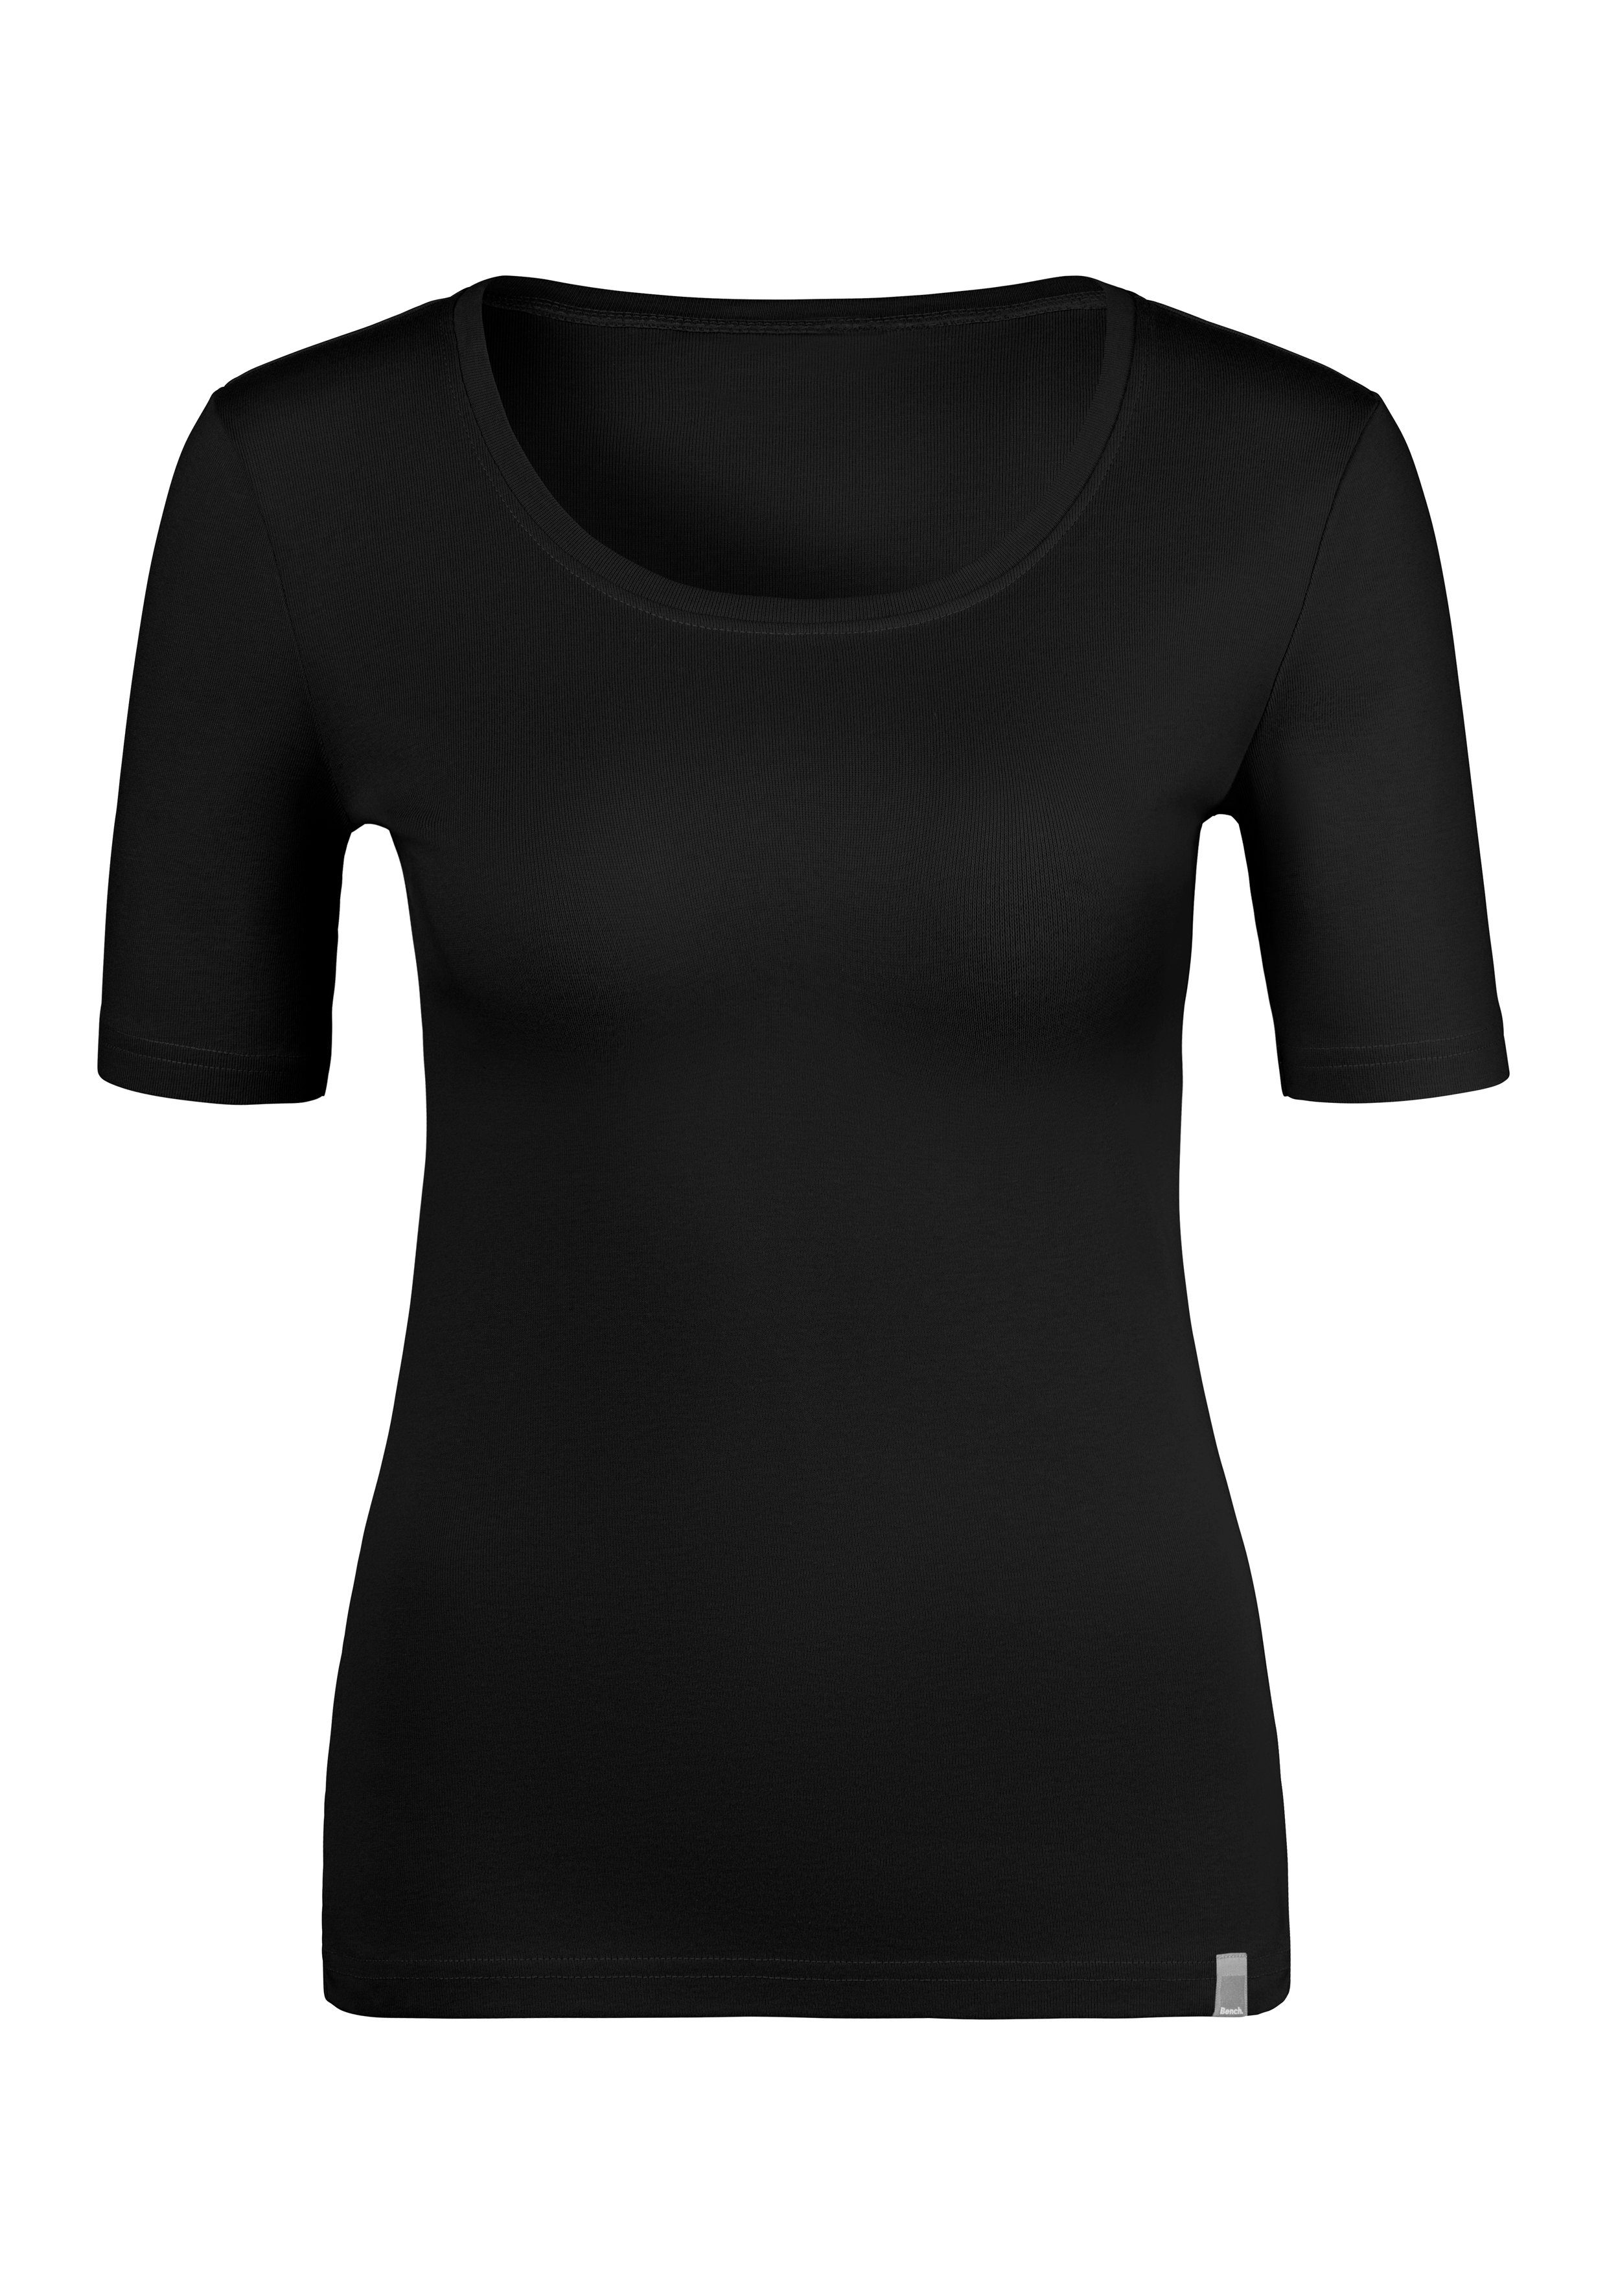 weicher (2er-Pack) aus Bench. T-Shirt schwarz rose, Feinripp-Qualität, Unterziehshirt